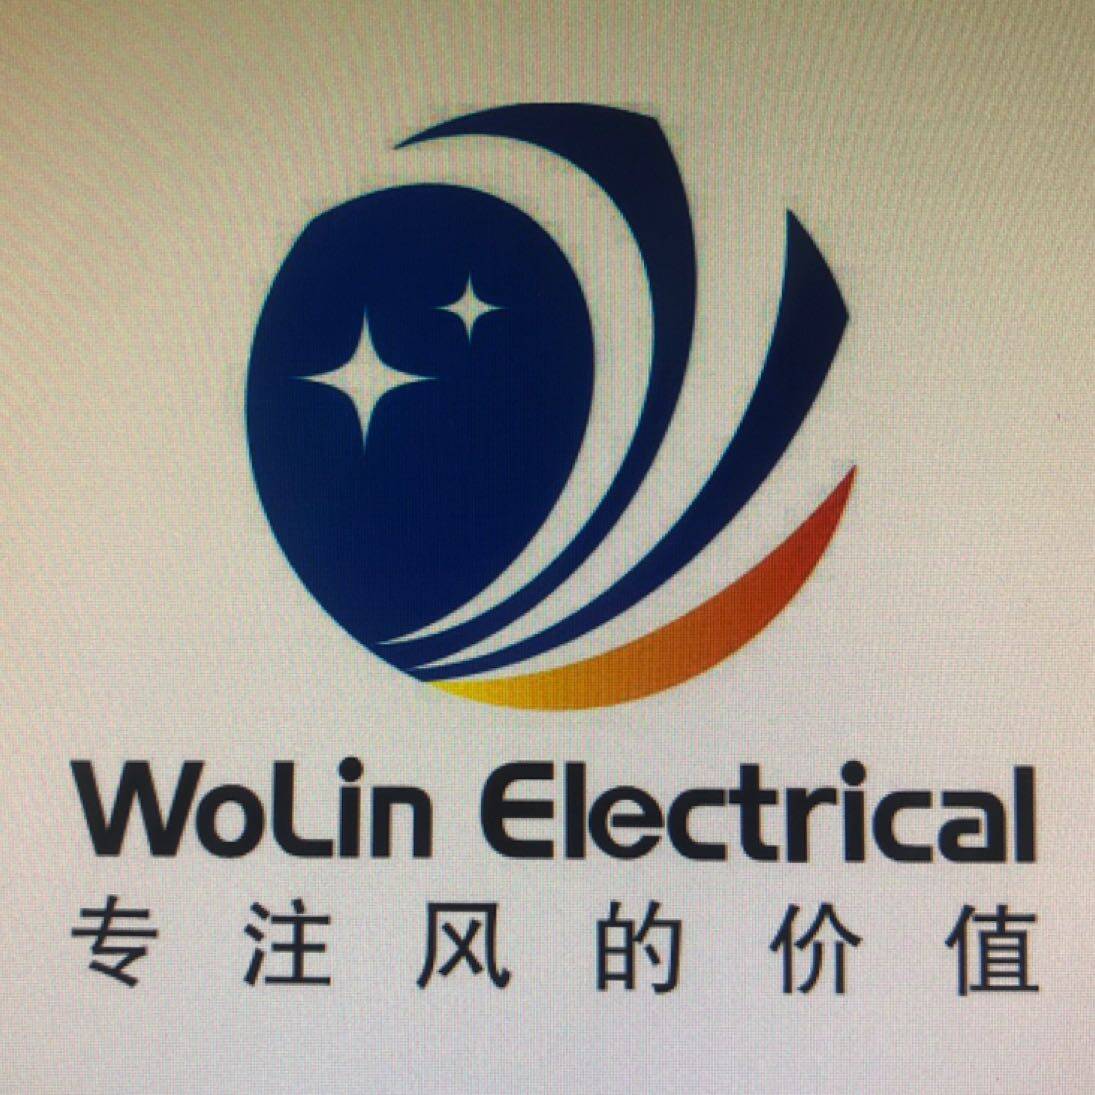 東莞市沃林機電科技有限公司